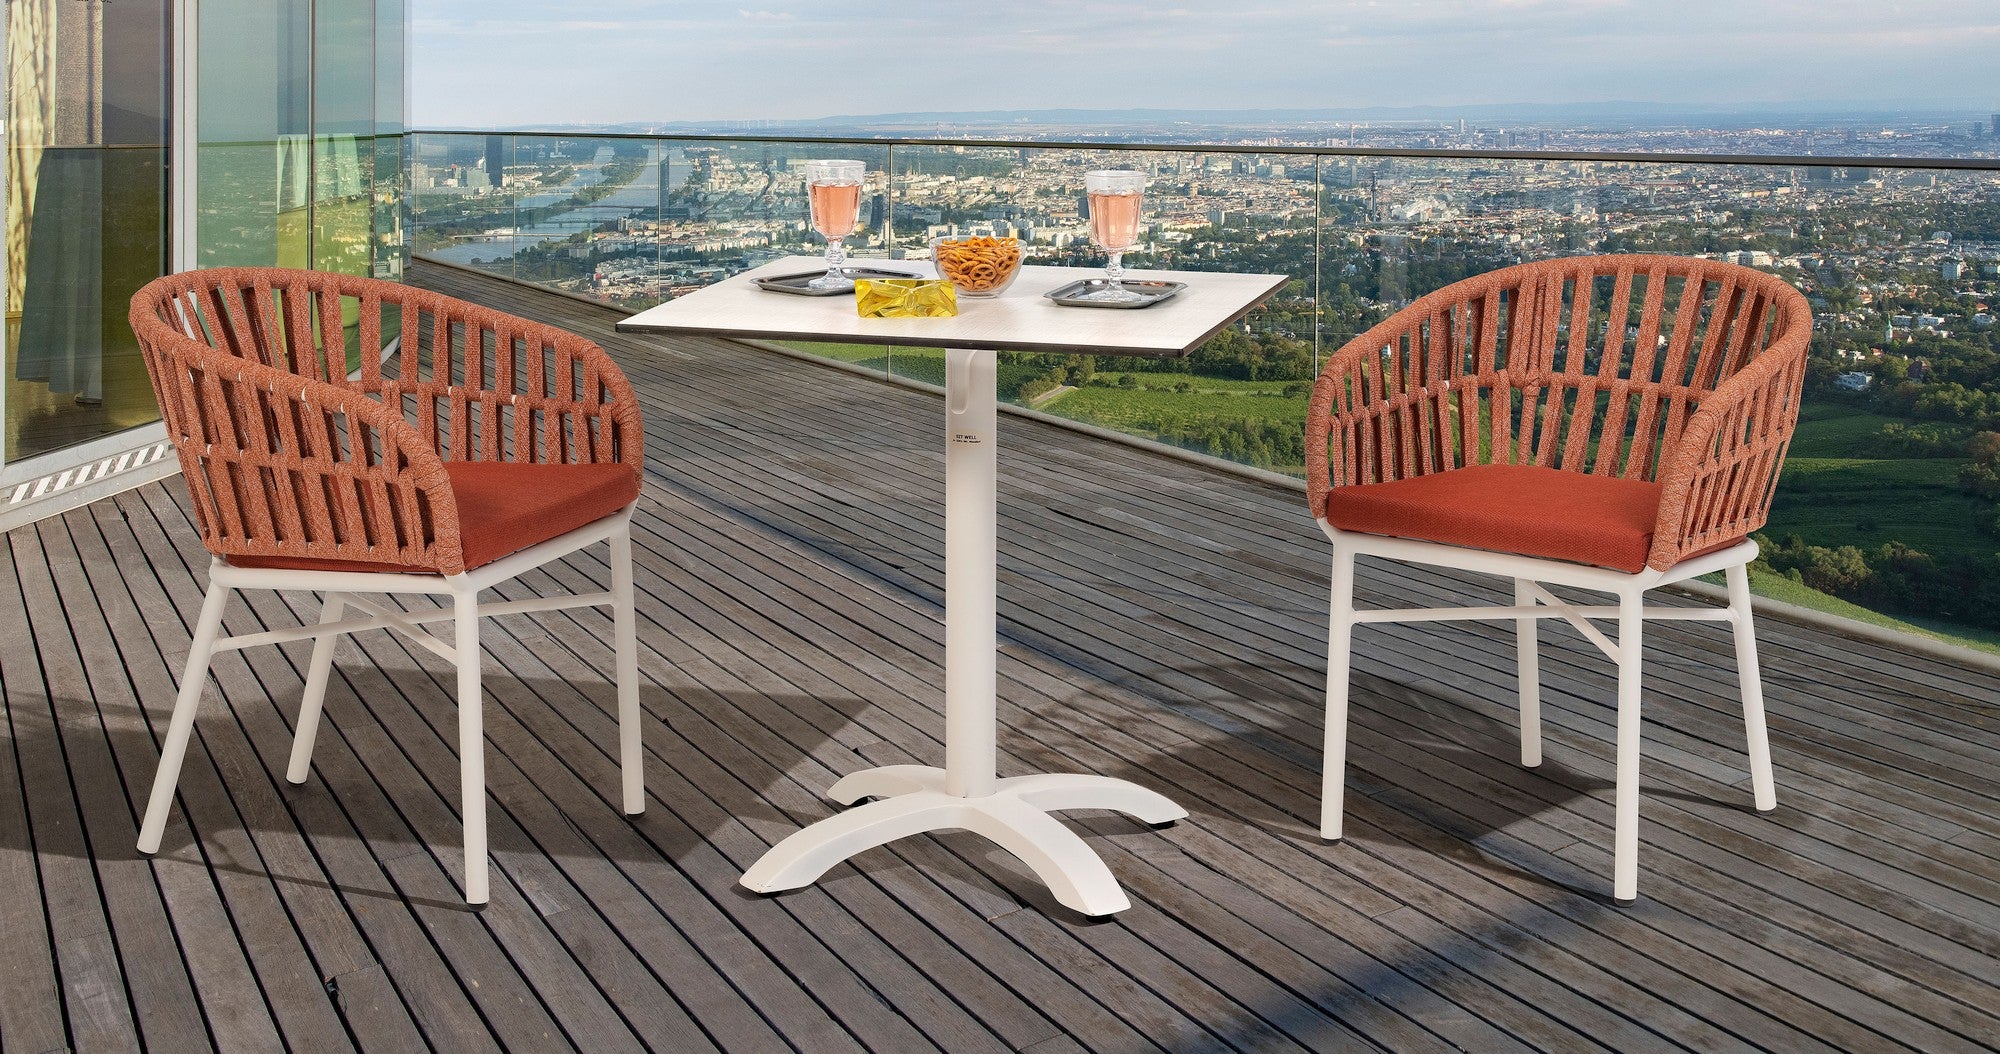 Gartenstuhl Beatrix in Weiß mit Terracotta oder Creme Textilschnüren und komfortablem Sitzkissen, ideal für moderne Außenbereiche.